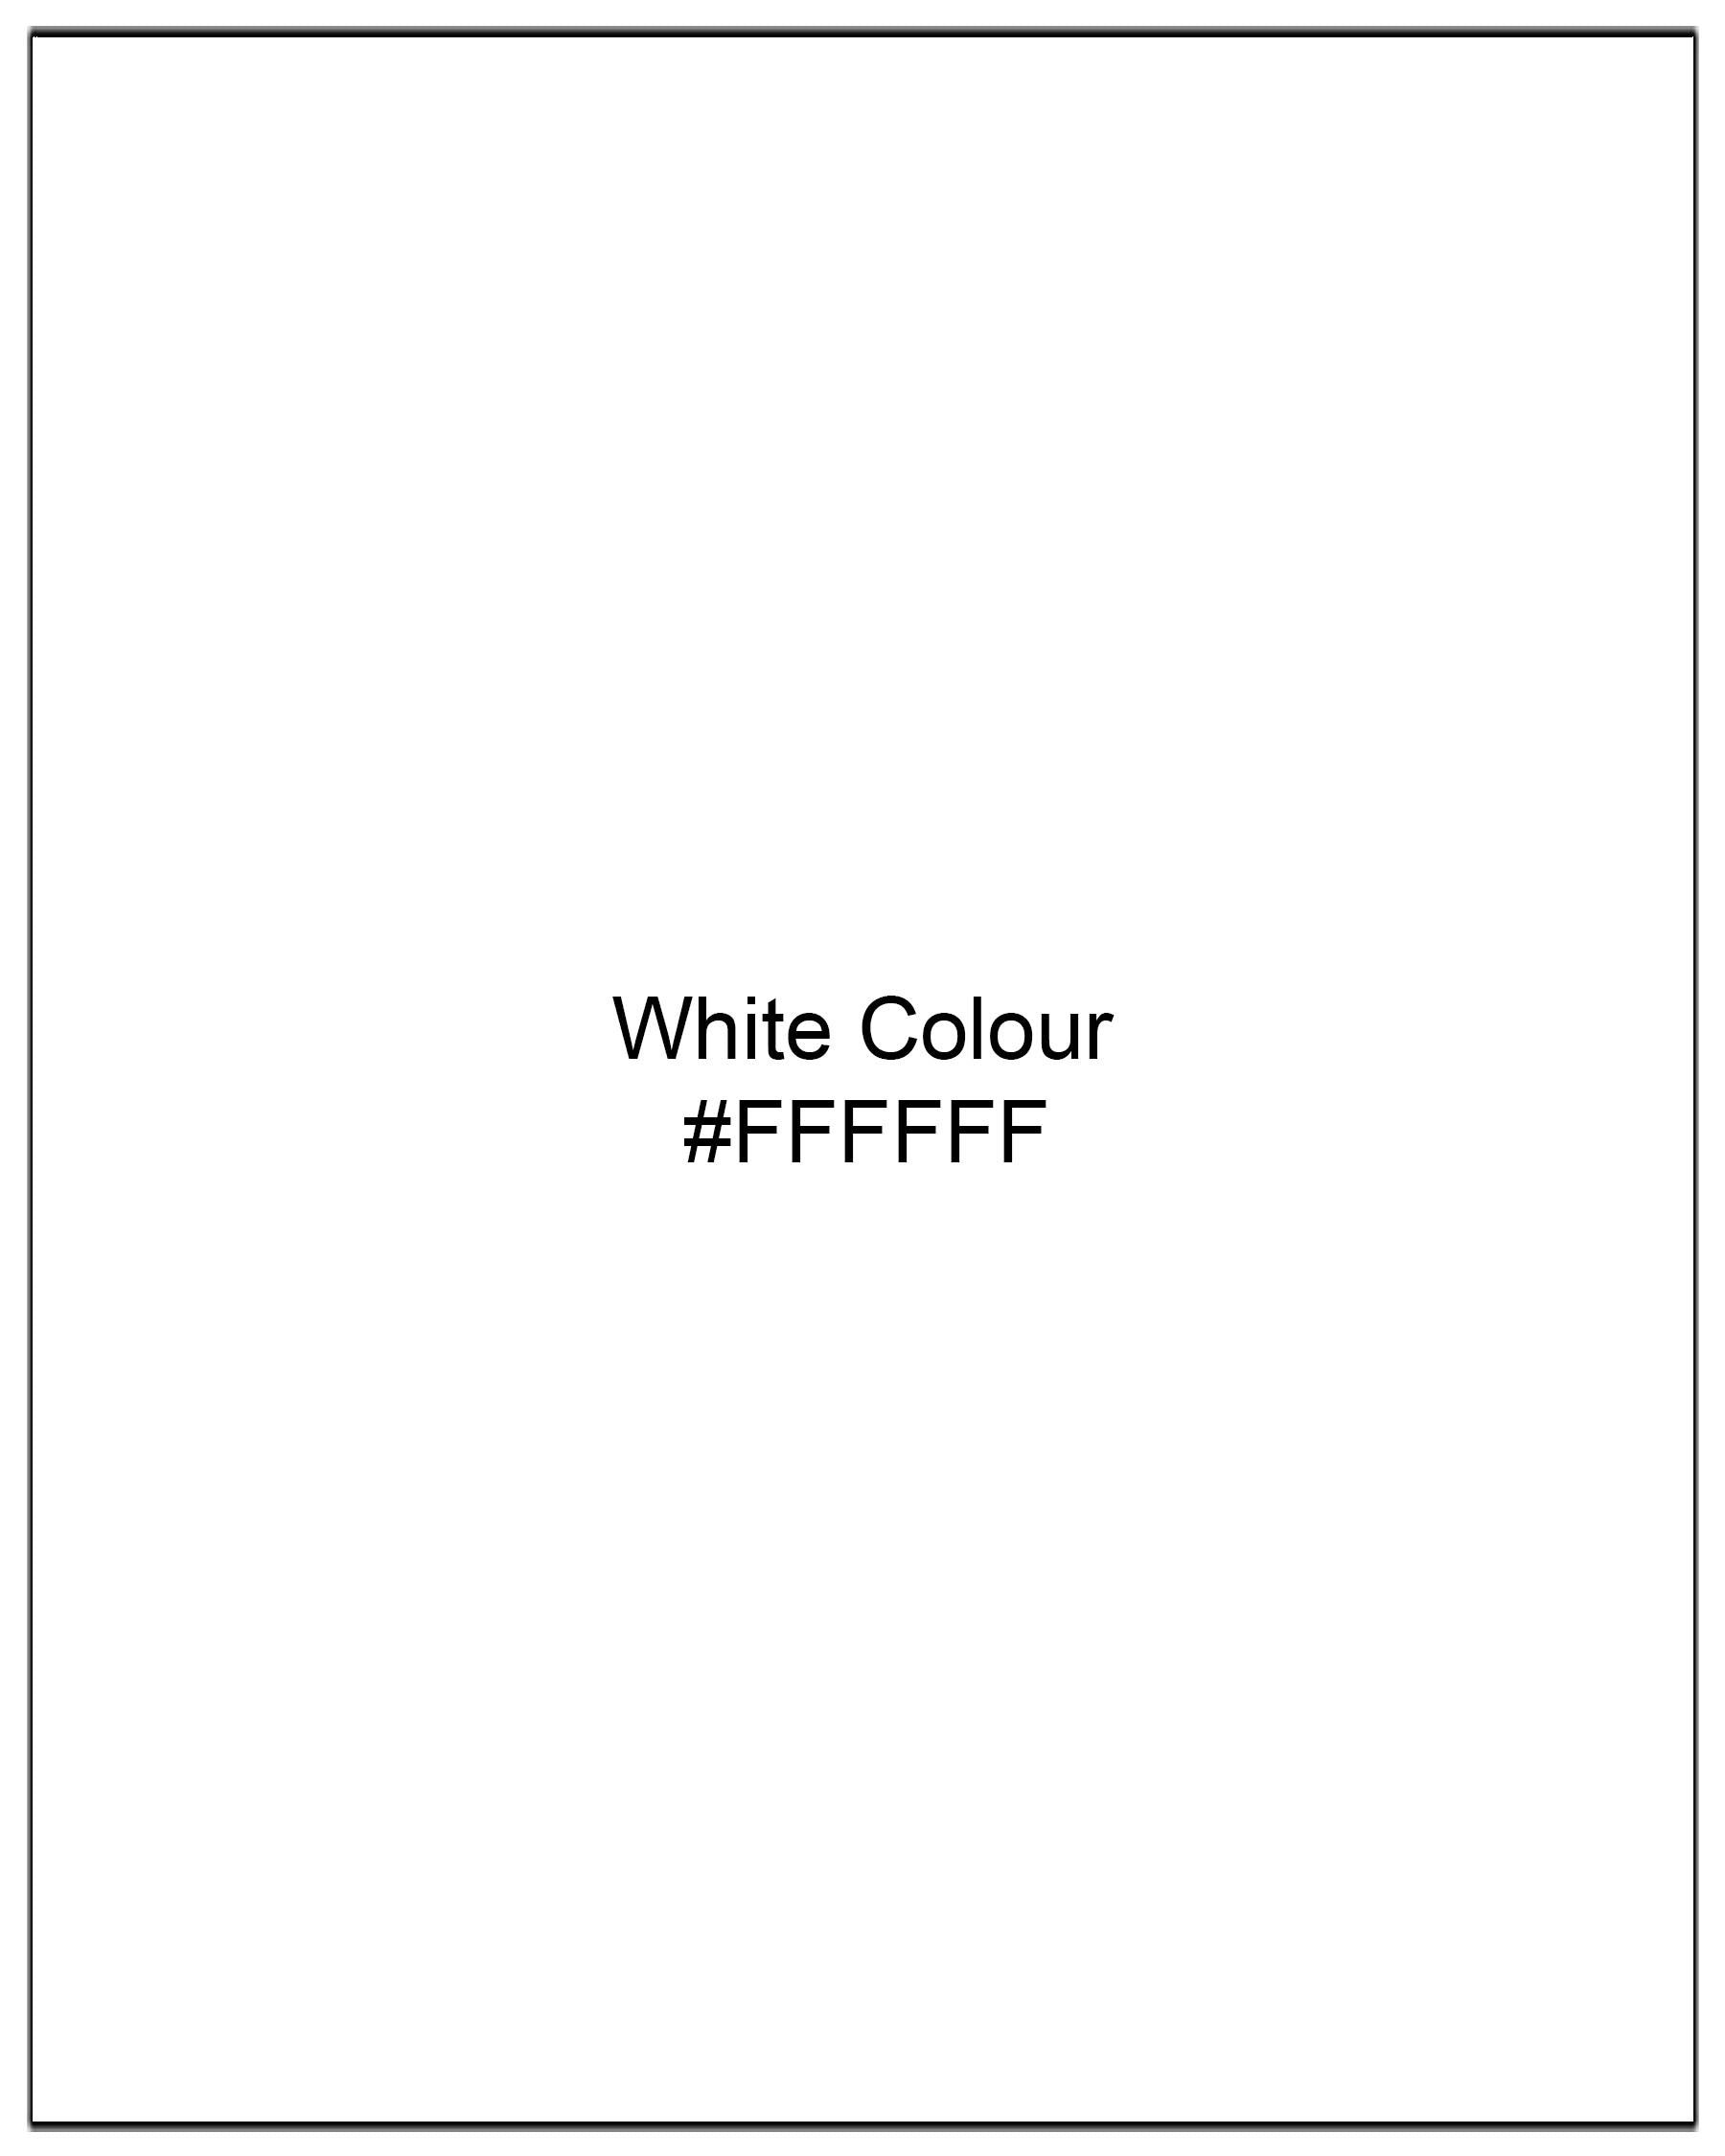 Bright White Cotton Pant T1971-28, T1971-30, T1971-32, T1971-34, T1971-36, T1971-38, T1971-40, T1971-42, T1971-44